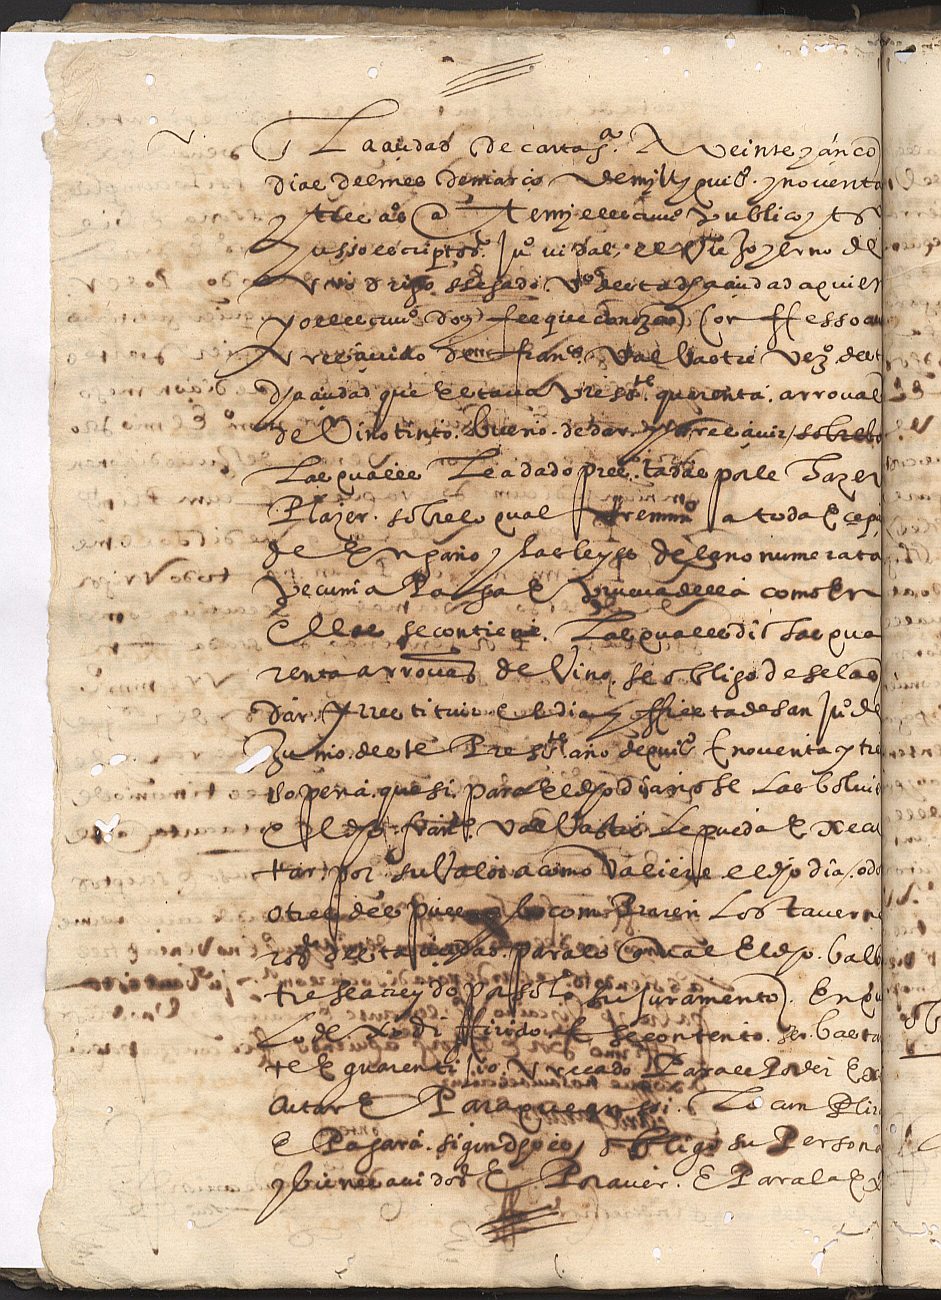 Obligación de Juan Vidal el Viejo, yerno de Rodrigo Segado, vecinos de Cartagena, con Francisco Valvastre de quien recibió 40 arrobas de vino tinto.